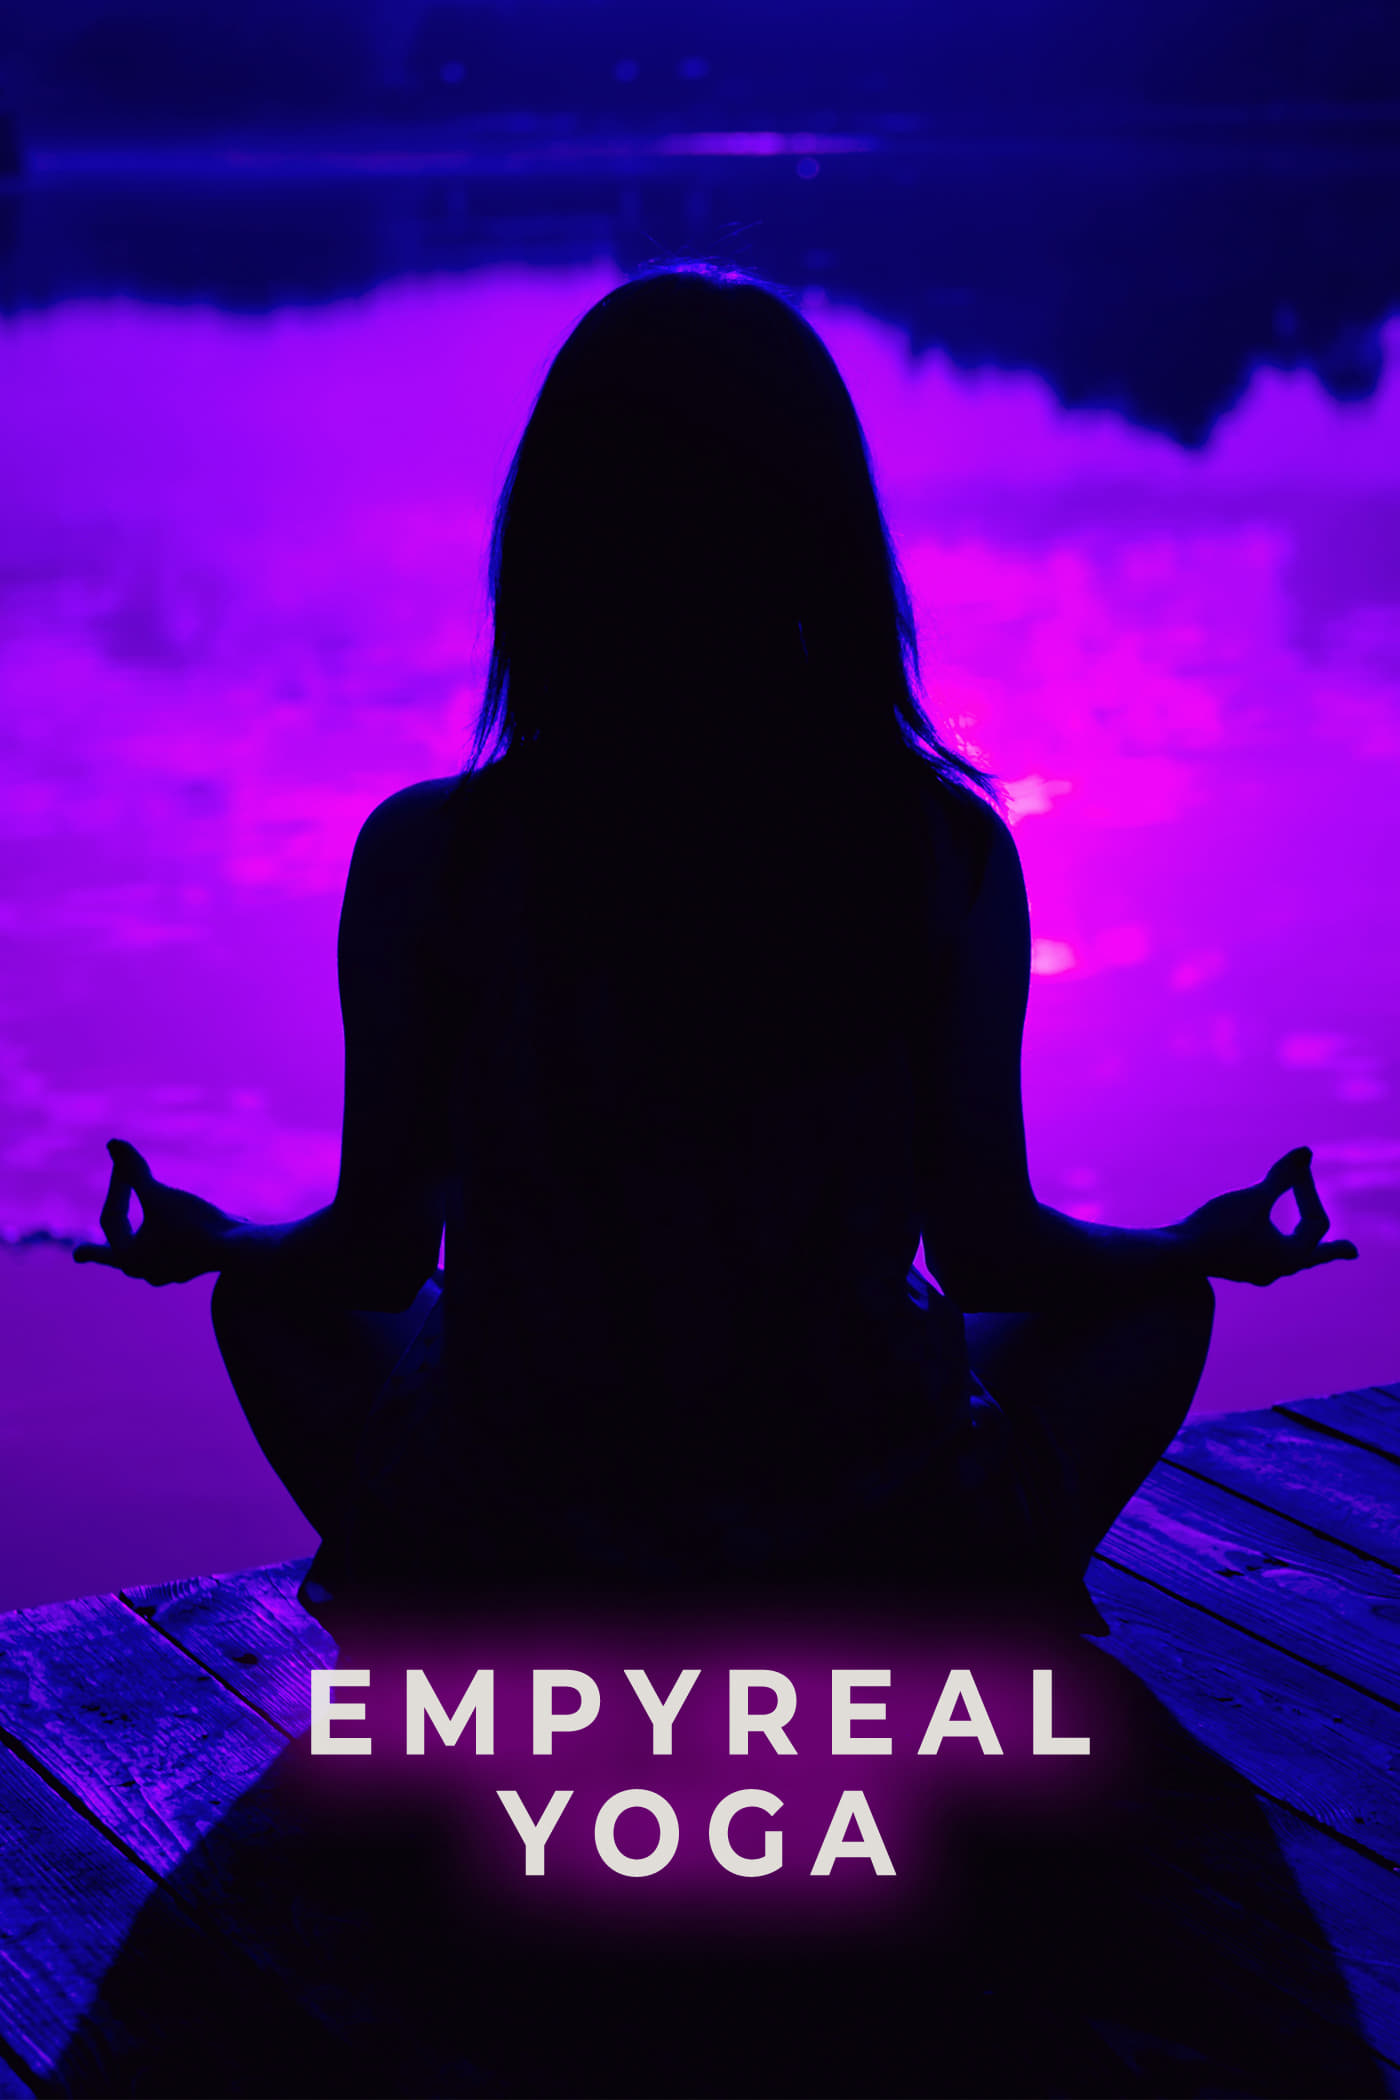 Empyreal Yoga